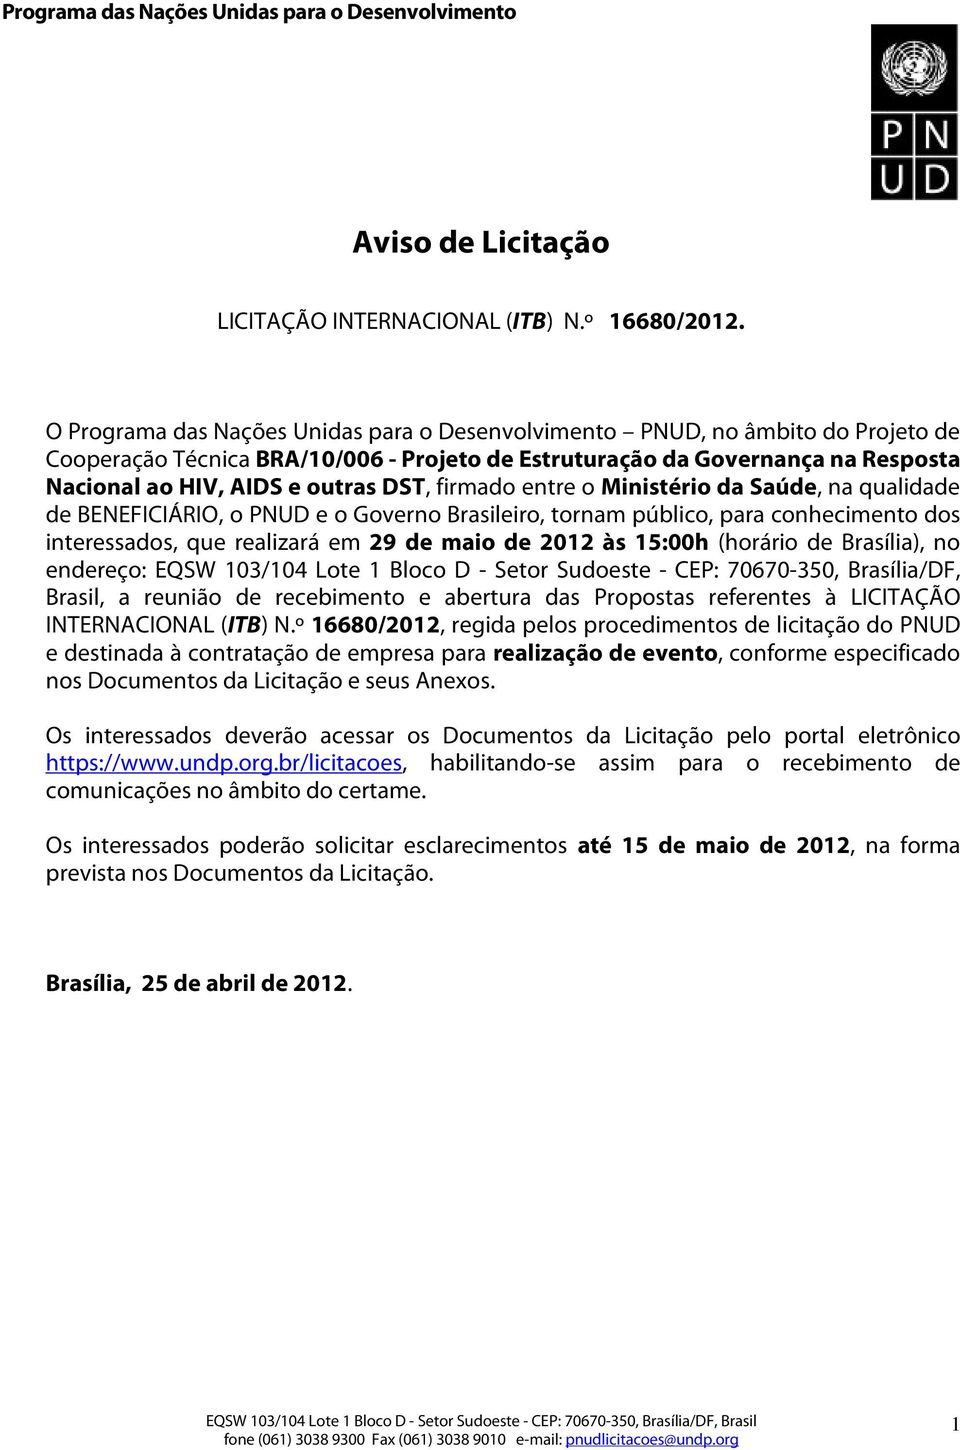 firmado entre o Ministério da Saúde, na qualidade de BENEFICIÁRIO, o PNUD e o Governo Brasileiro, tornam público, para conhecimento dos interessados, que realizará em 29 de maio de 2012 às 15:00h